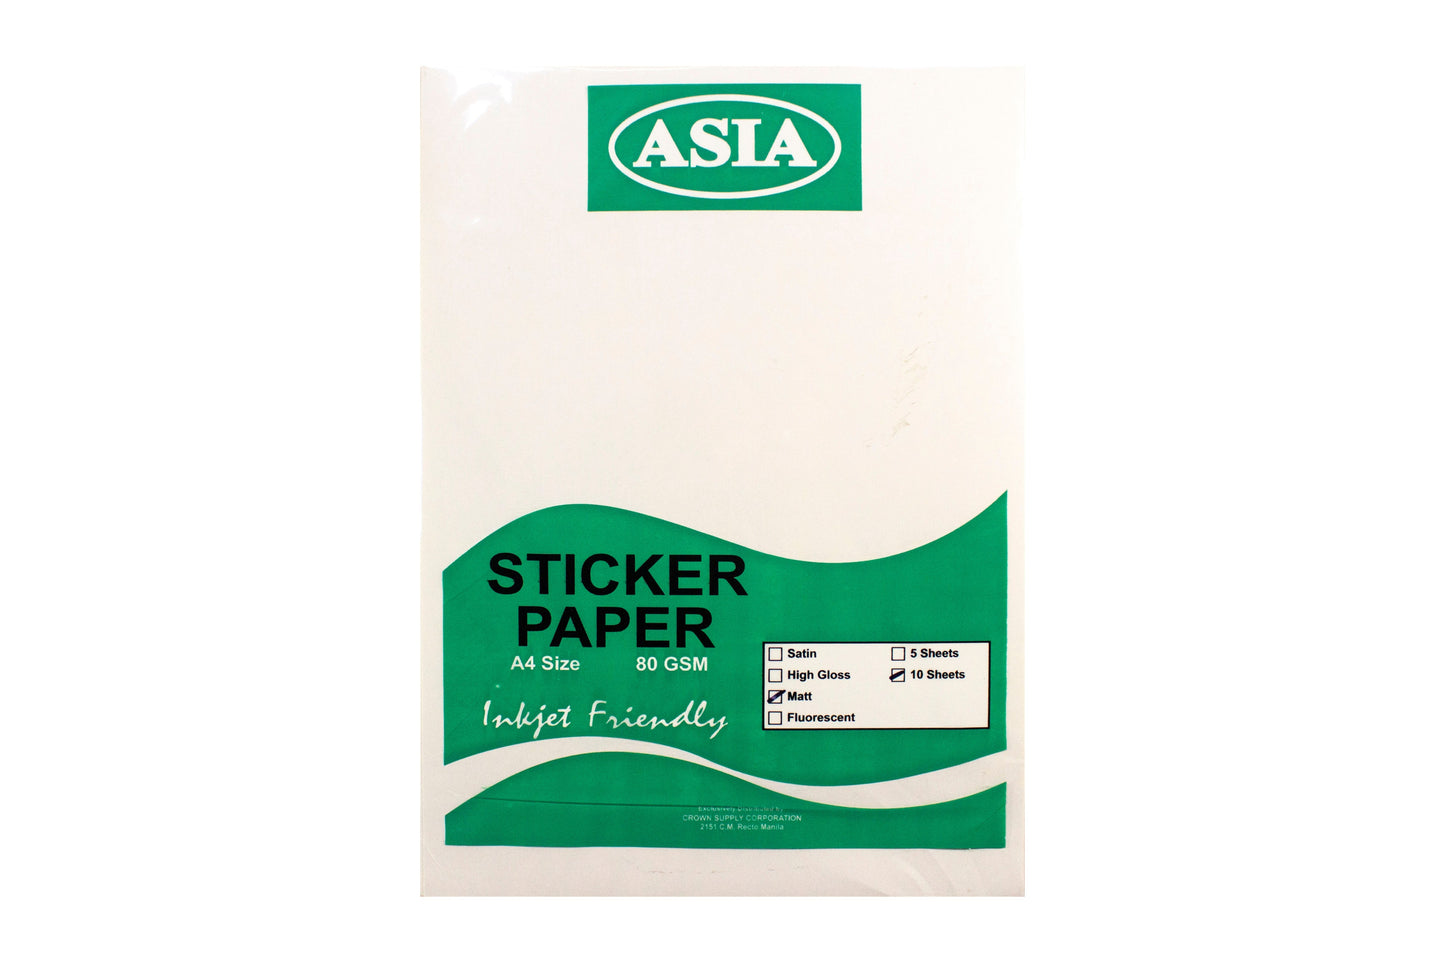 Asia Sticker Paper 80gsm